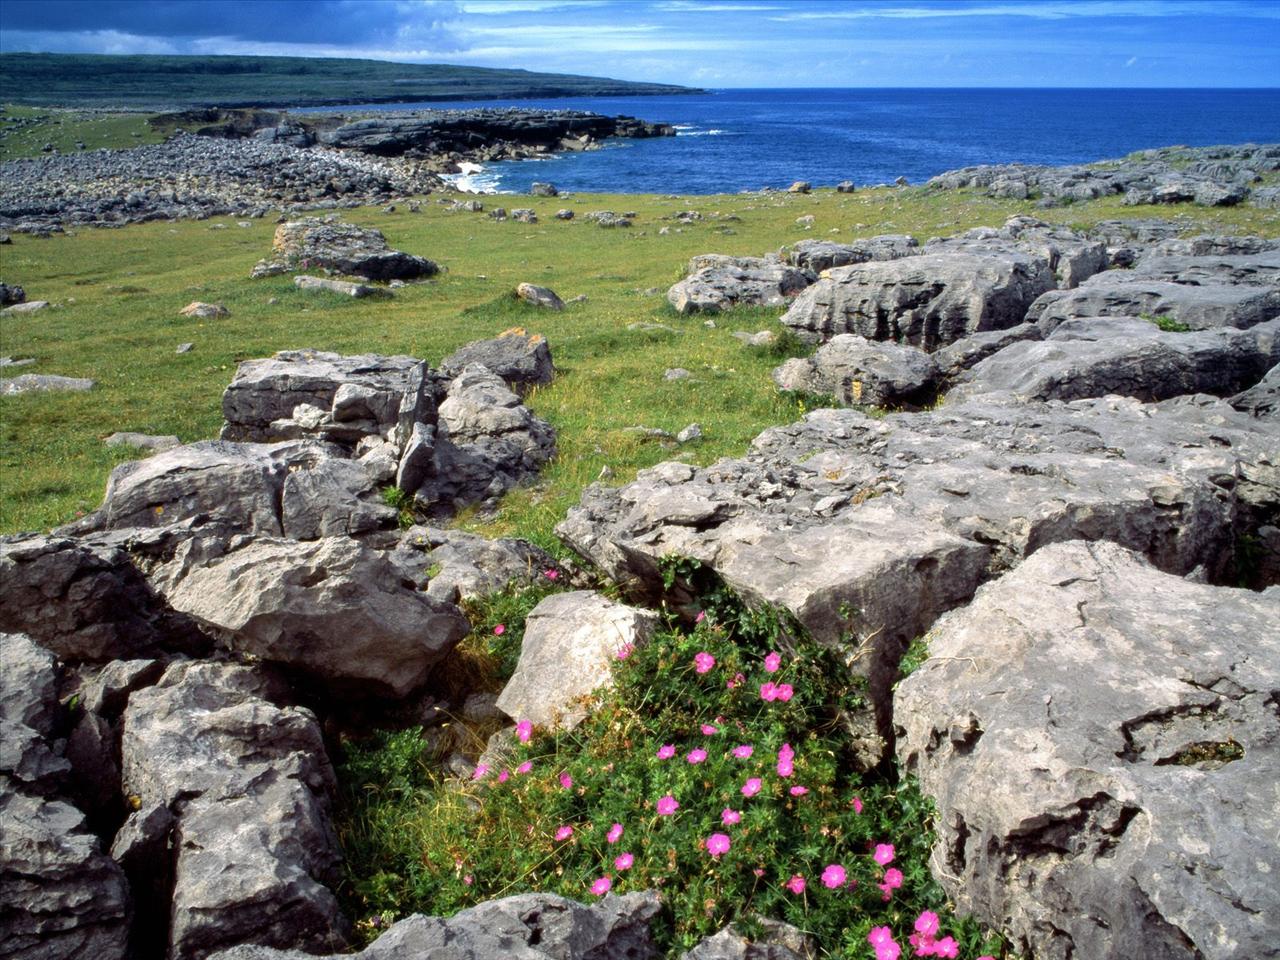 Irlandia - Wildflowers of the Burren, Ireland.jpg